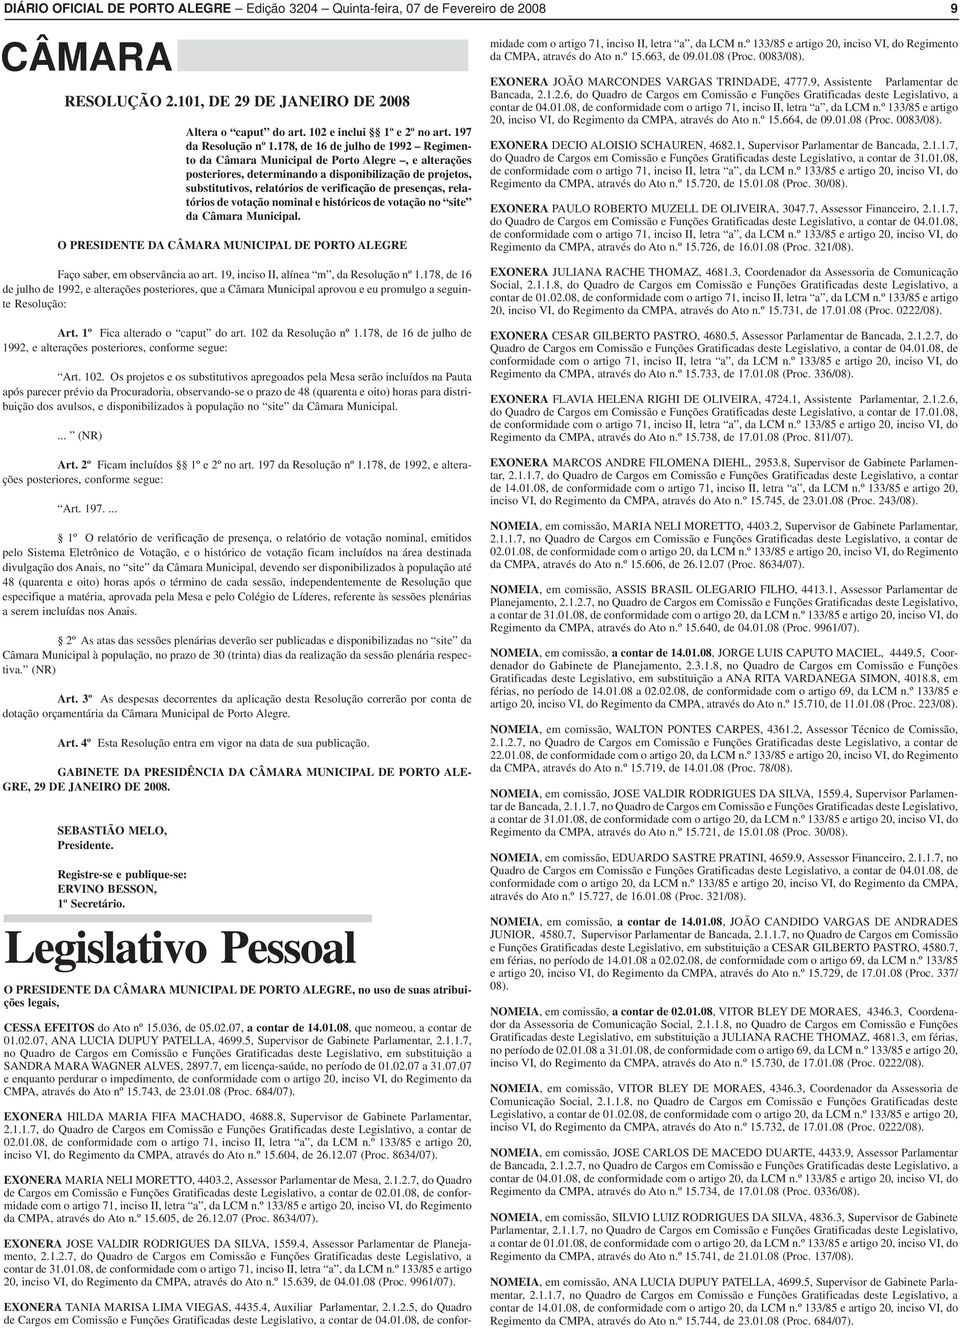 178, de 16 de julho de 1992 Regimento da Câmara Municipal de Porto Alegre, e alterações posteriores, determinando a disponibilização de projetos, substitutivos, relatórios de verificação de